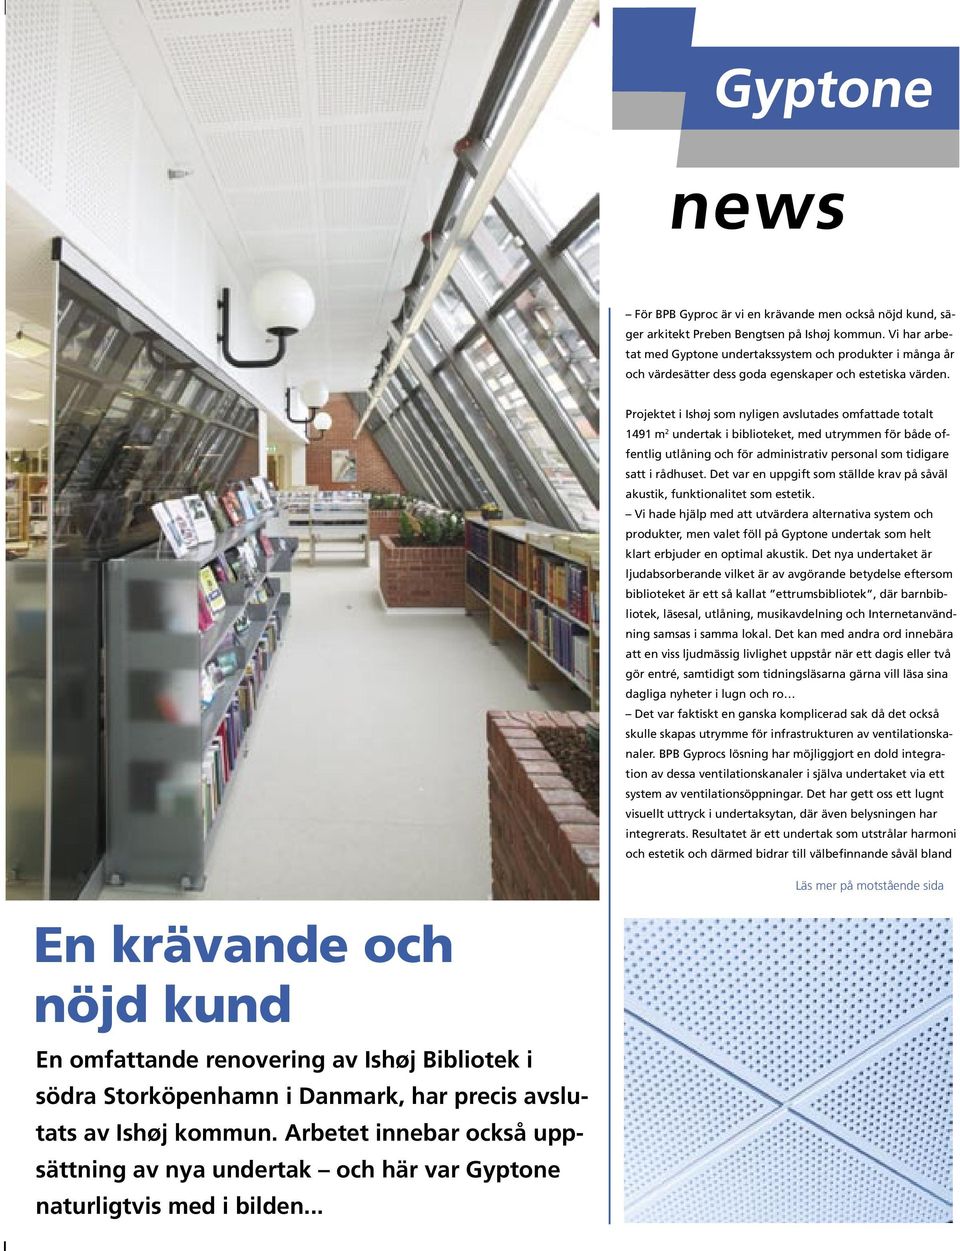 Projektet i Ishøj som nyligen avslutades omfattade totalt 1491 m 2 undertak i biblioteket, med utrymmen för både offentlig utlåning och för administrativ personal som tidigare satt i rådhuset.